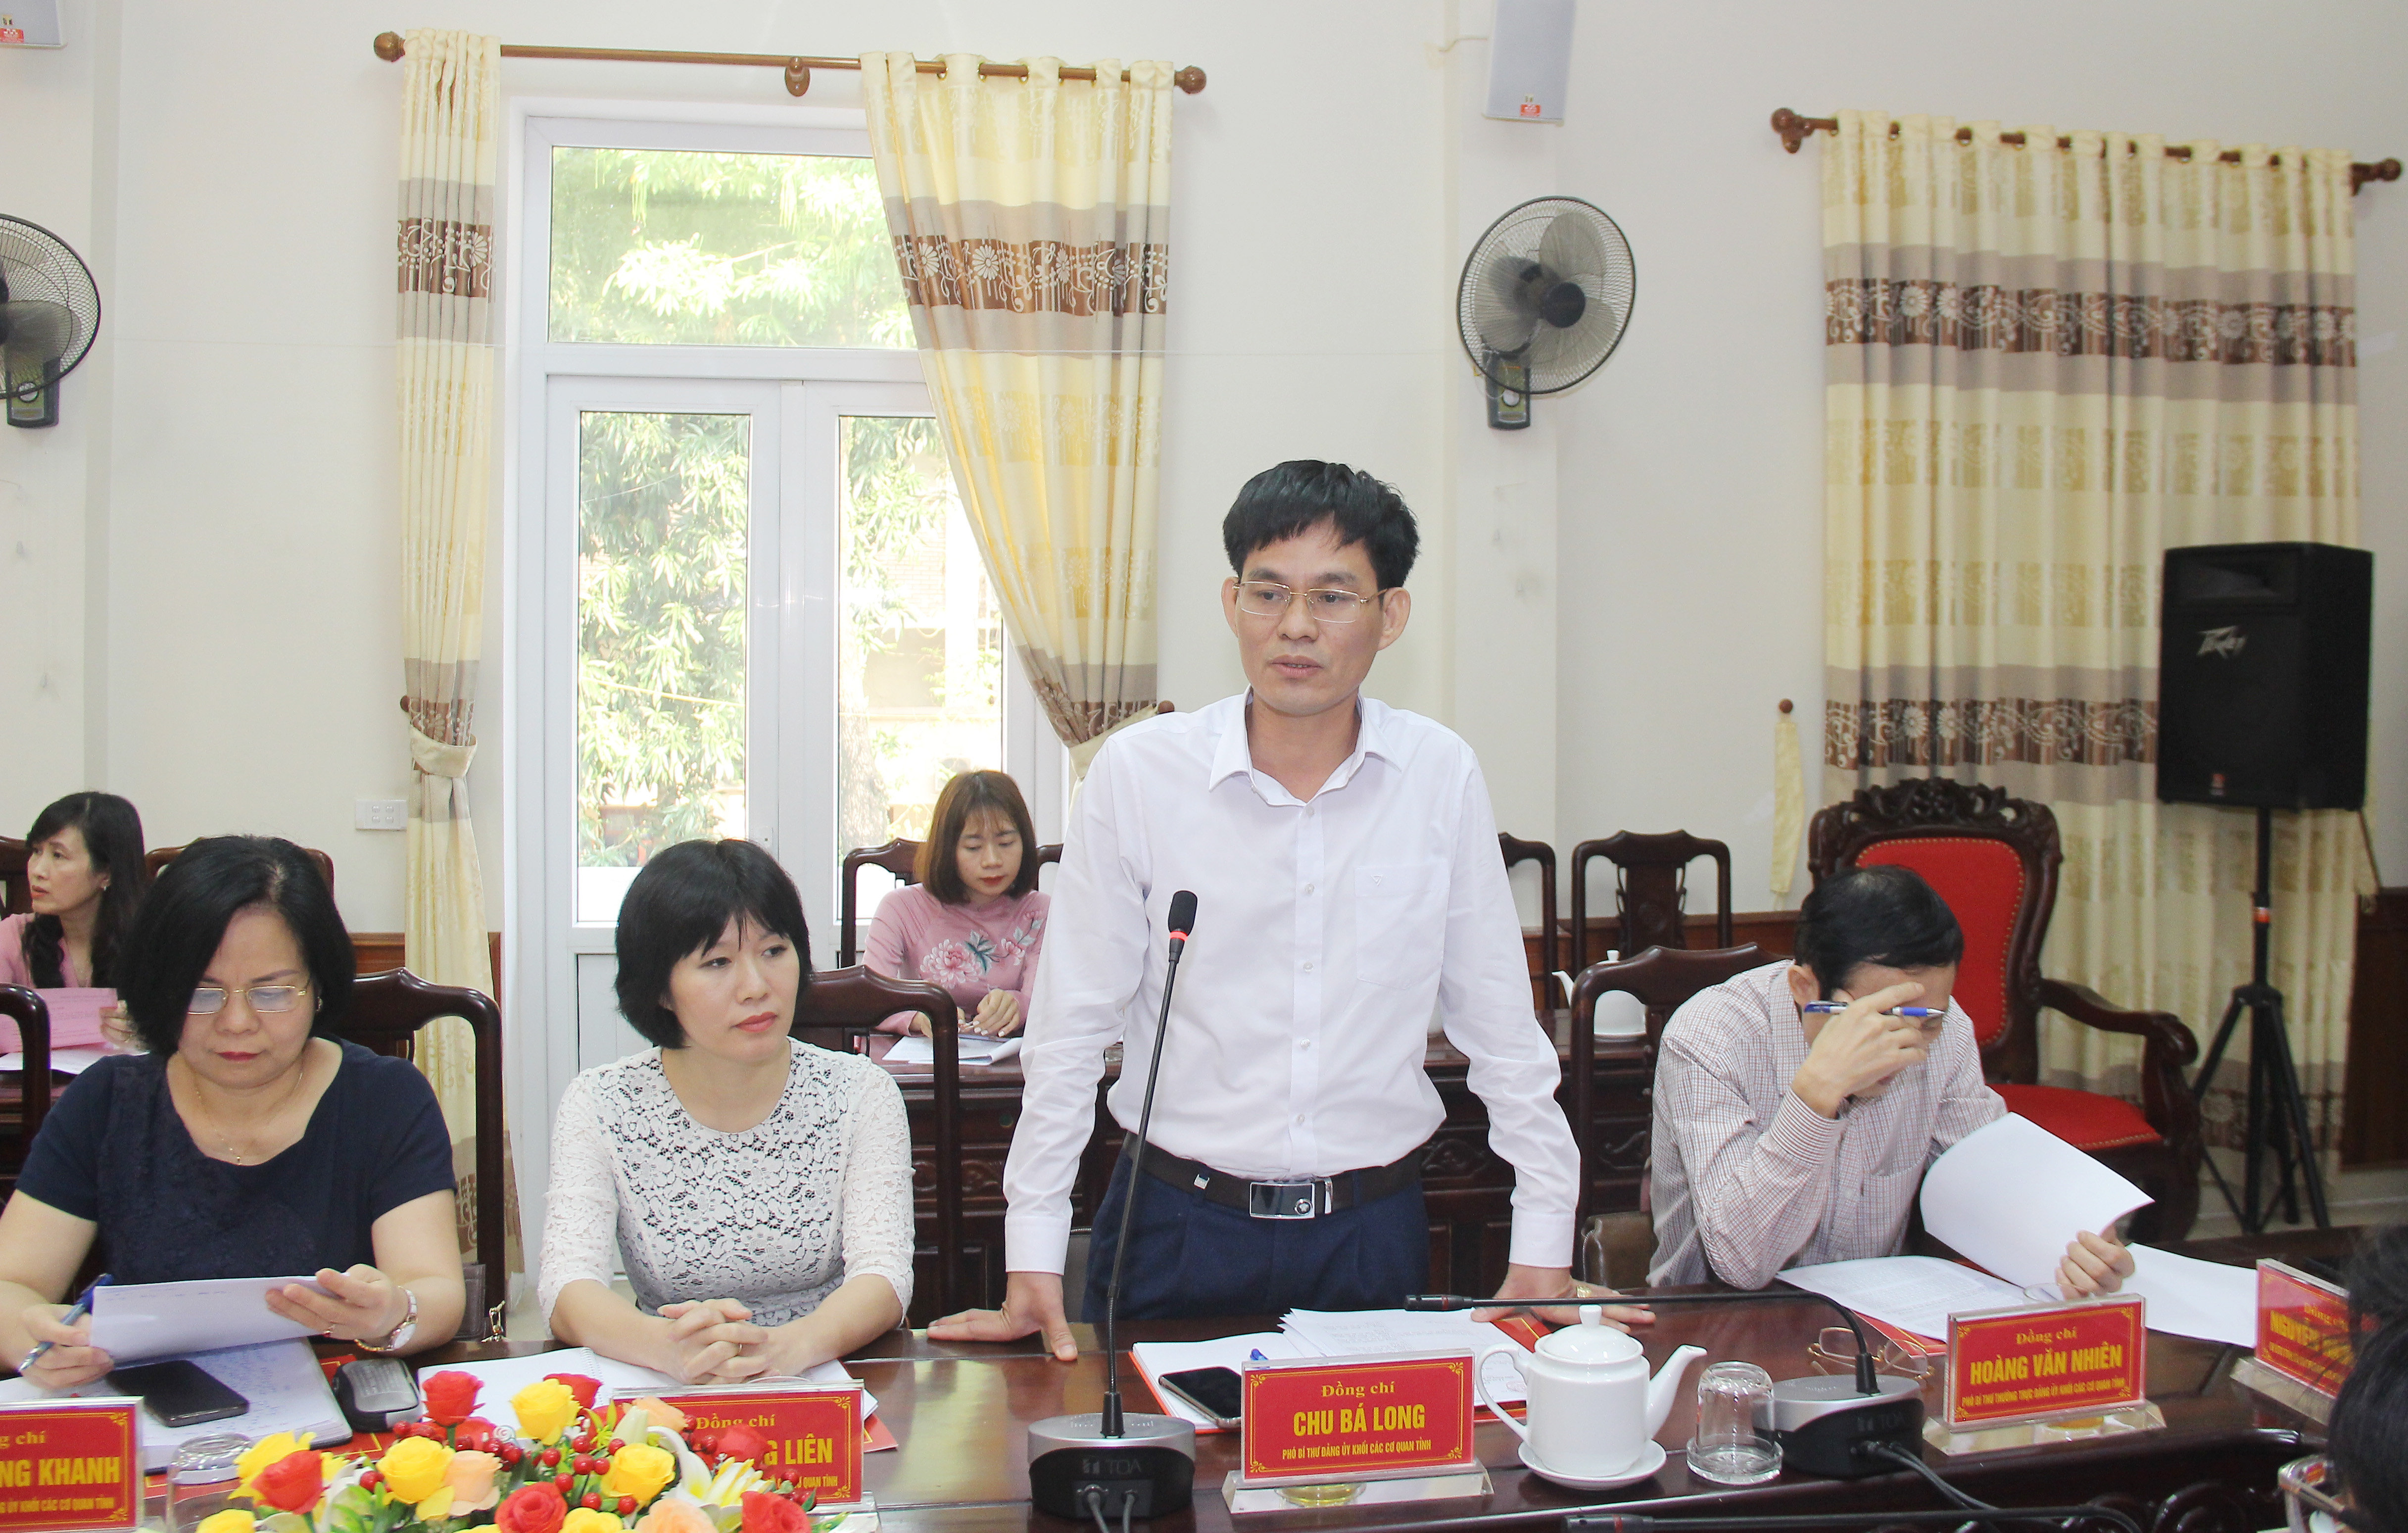 Đồng chí Chu Bá Long - Phó Bí thư Đảng ủy Khối các cơ quan tỉnh cho rằng, 2 bên cần tăng cường phối hợp trong việc nêu cao sự gương mẫu của đảng viên nơi cư trú. Ảnh: Mai Hoa